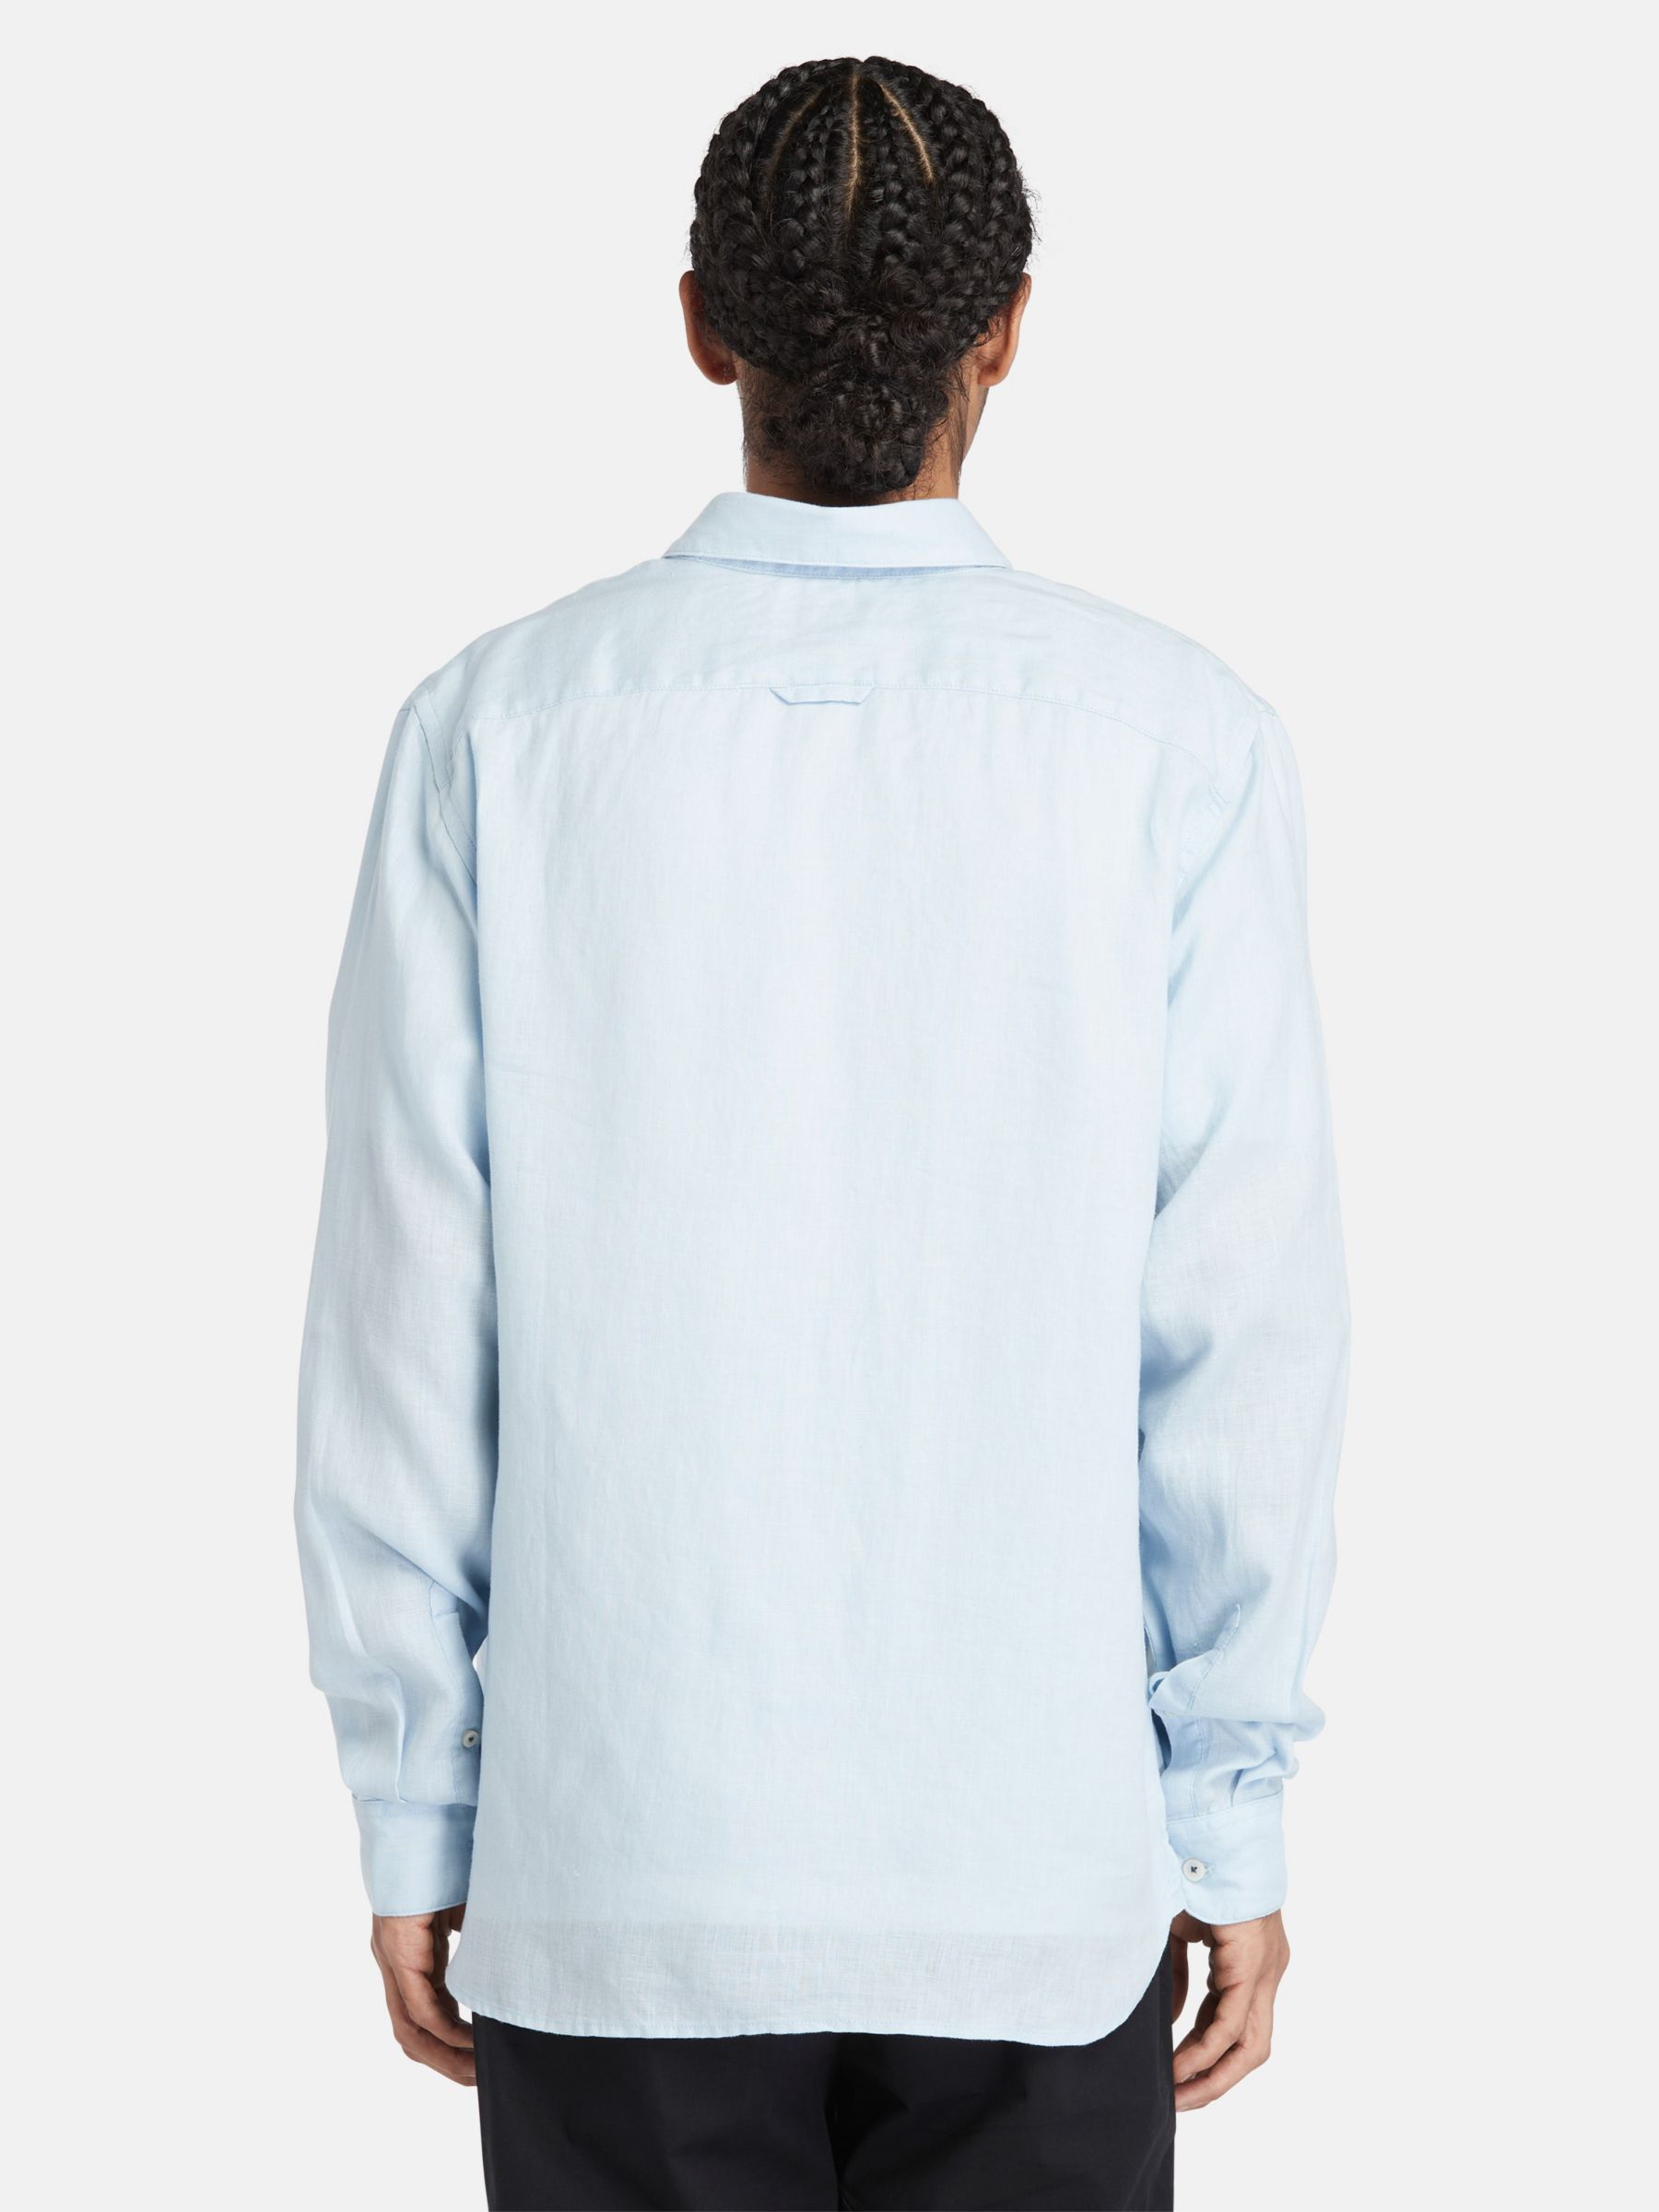 Timberland Linen Long Sleeve Slim Shirt, Blue, S